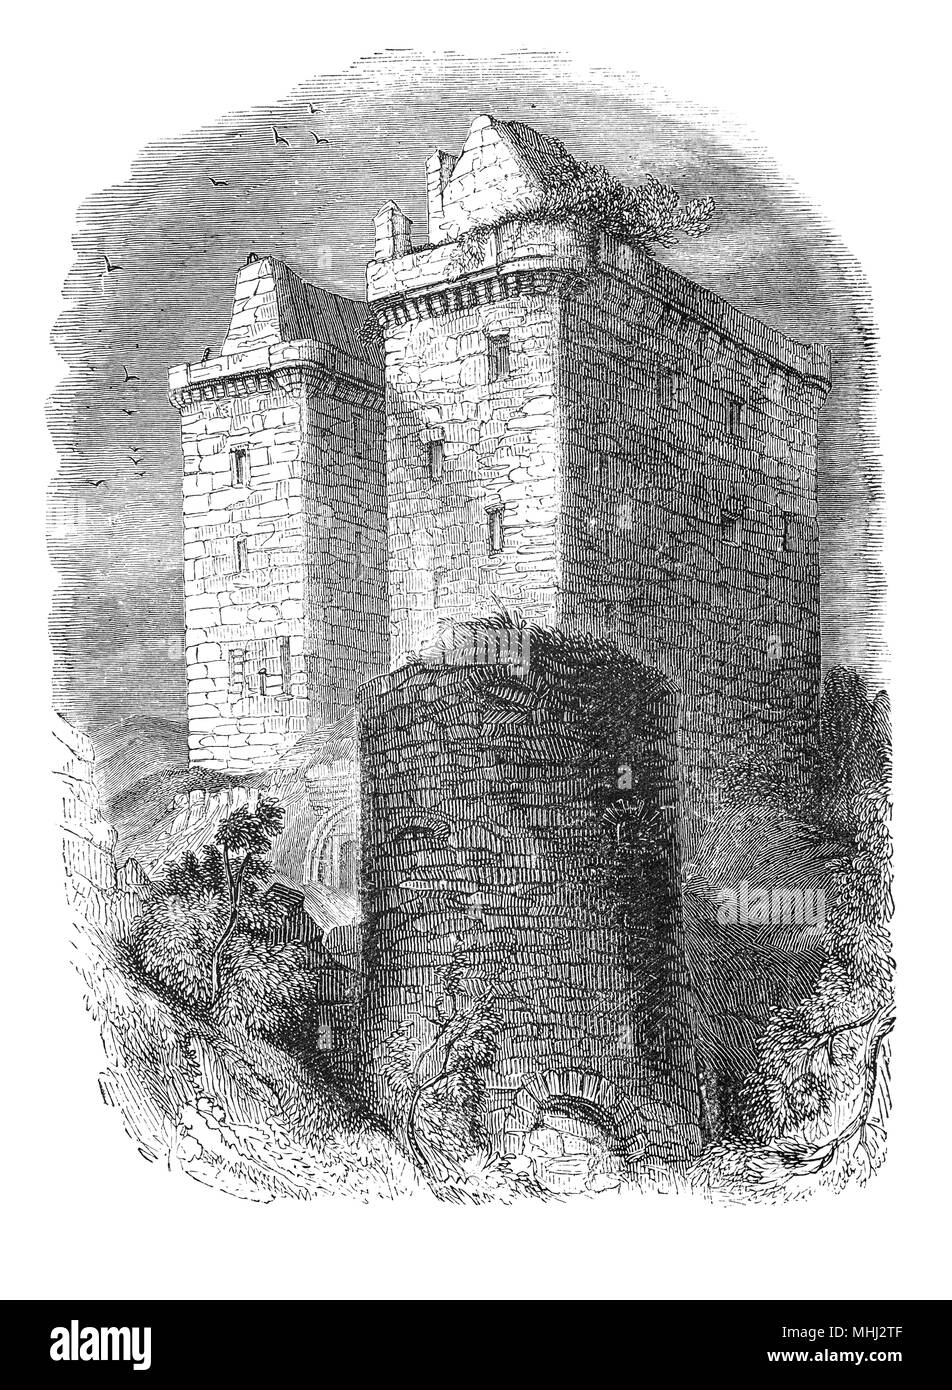 Borthwick Castillo es uno de los más grandes y mejor conservados de Escocia medieval sobreviviente de las fortificaciones. Está ubicado a 12 millas al sudeste de Edimburgo, al este de la aldea de Borthwick, en un sitio protegido por tres lados por una abrupta caída en el suelo. Fue construida en 1430 por Sir William BORTHWICK, de quien toma su nombre del castillo escocés, peer y embajador. Borthwick fue enviado en 1424 como rehén en Inglaterra en el lugar de Jaime I, que fue ocupado por Enrique IV de Inglaterra después de que los piratas capturaron un buque en el que se dirigía a Francia. Foto de stock